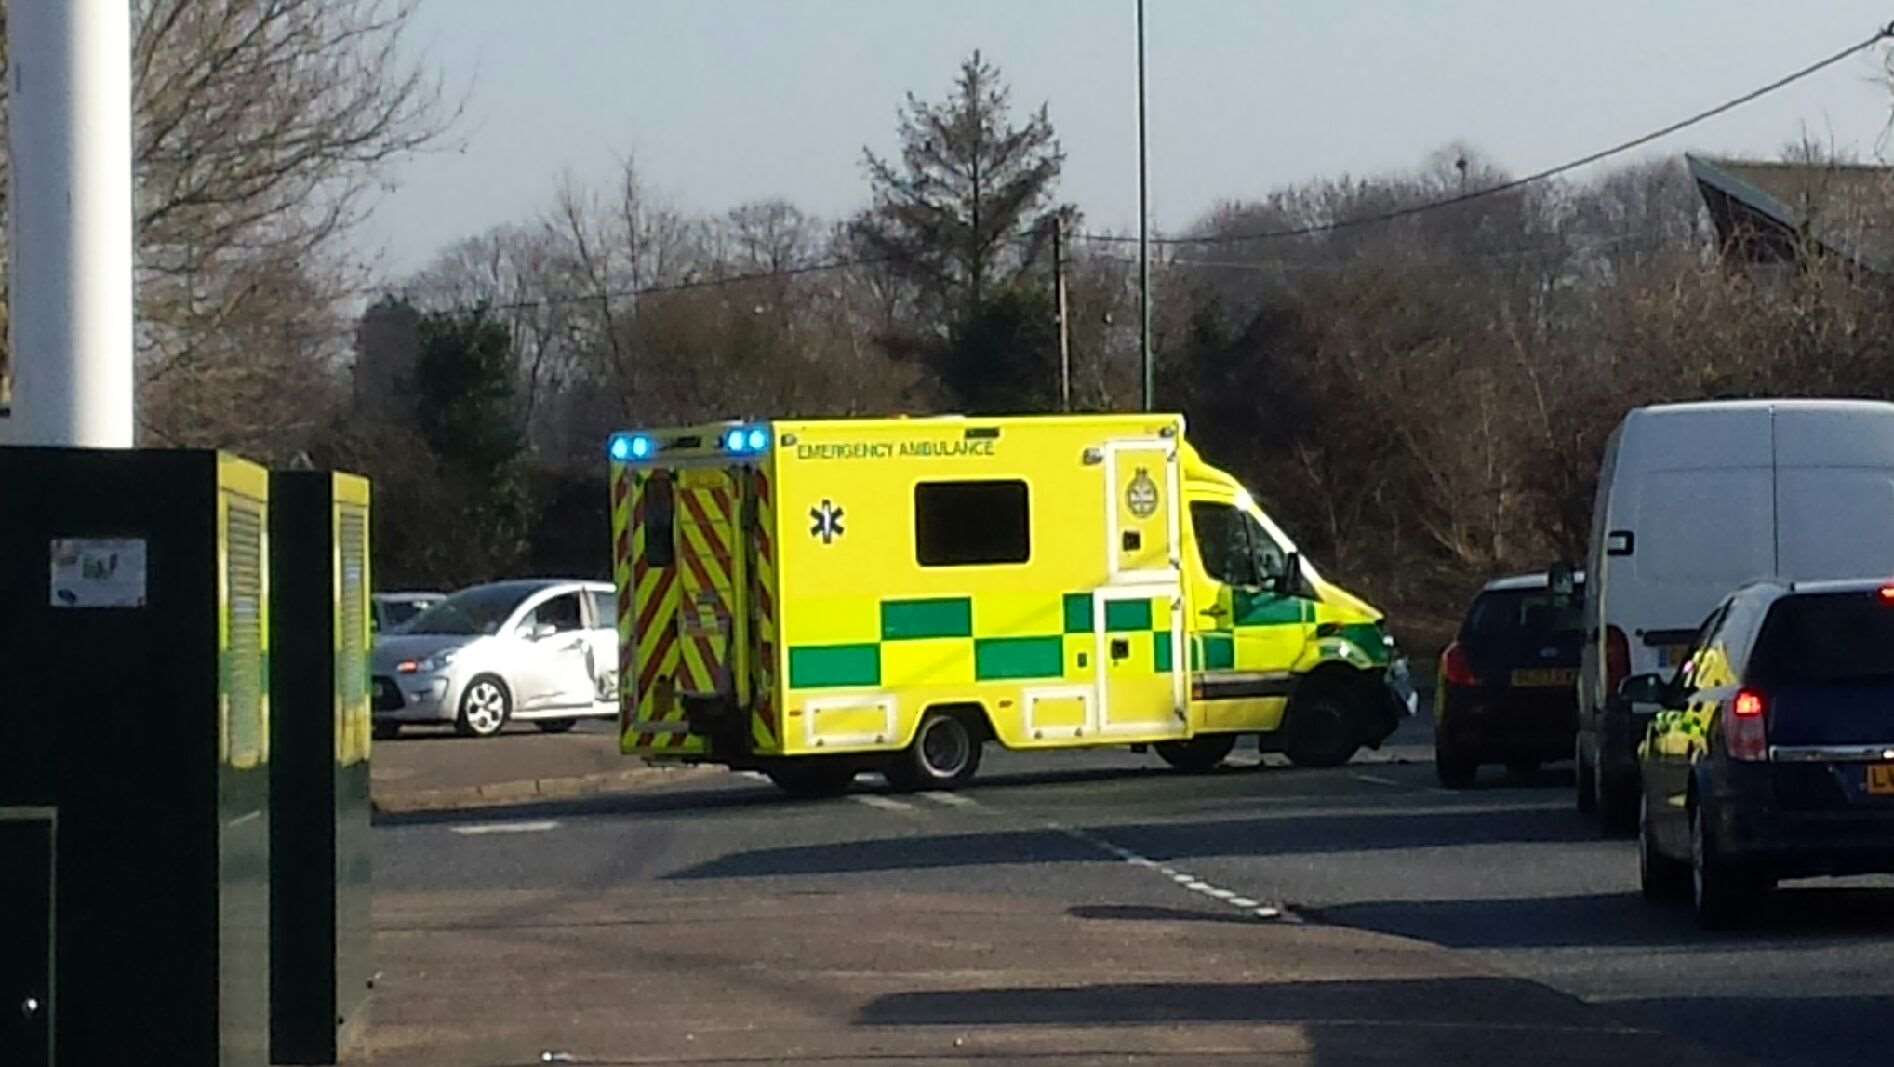 Bartkevicius crashed into the ambulance. Stock image.